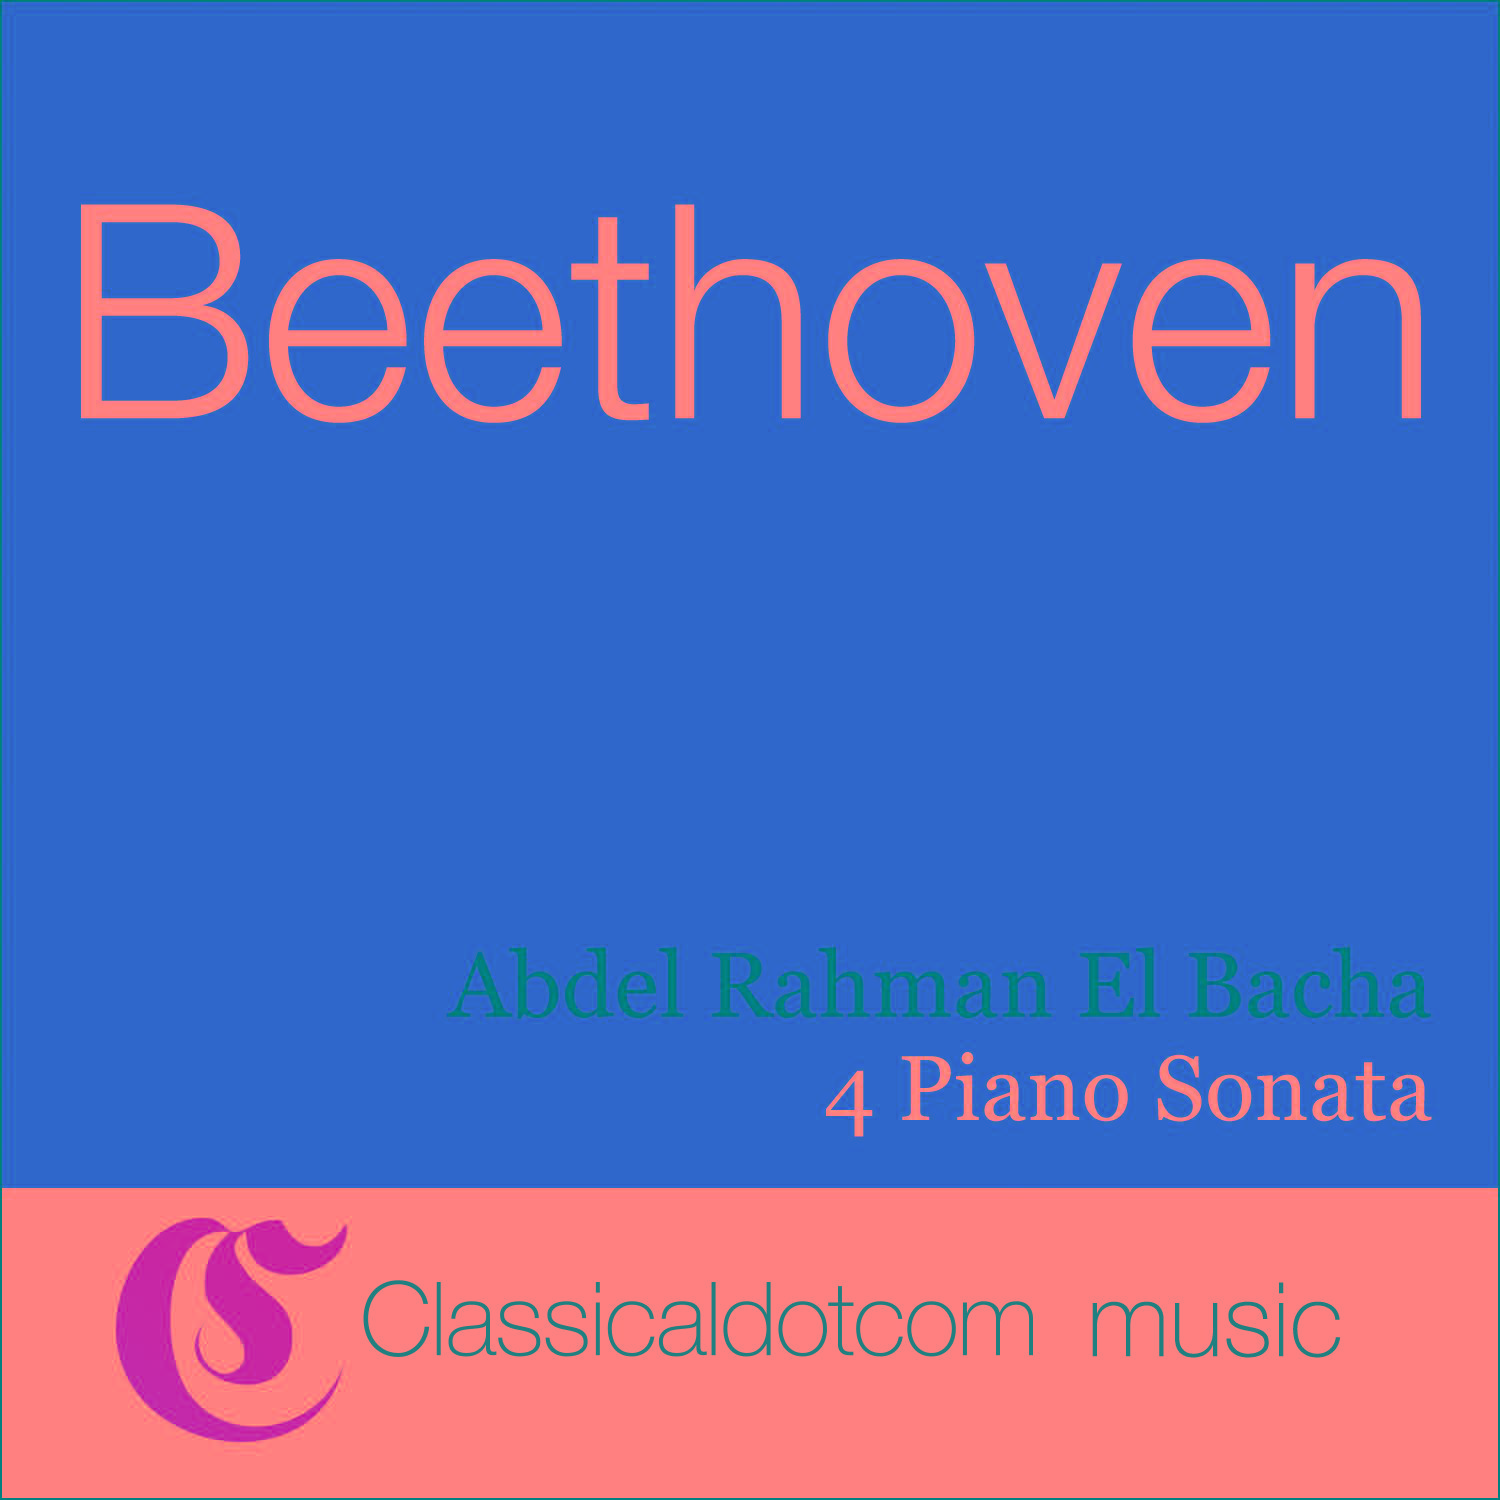 Piano Sonata No. 8 in C minor, Op. 13 Pathe tique  Adagio cantabile